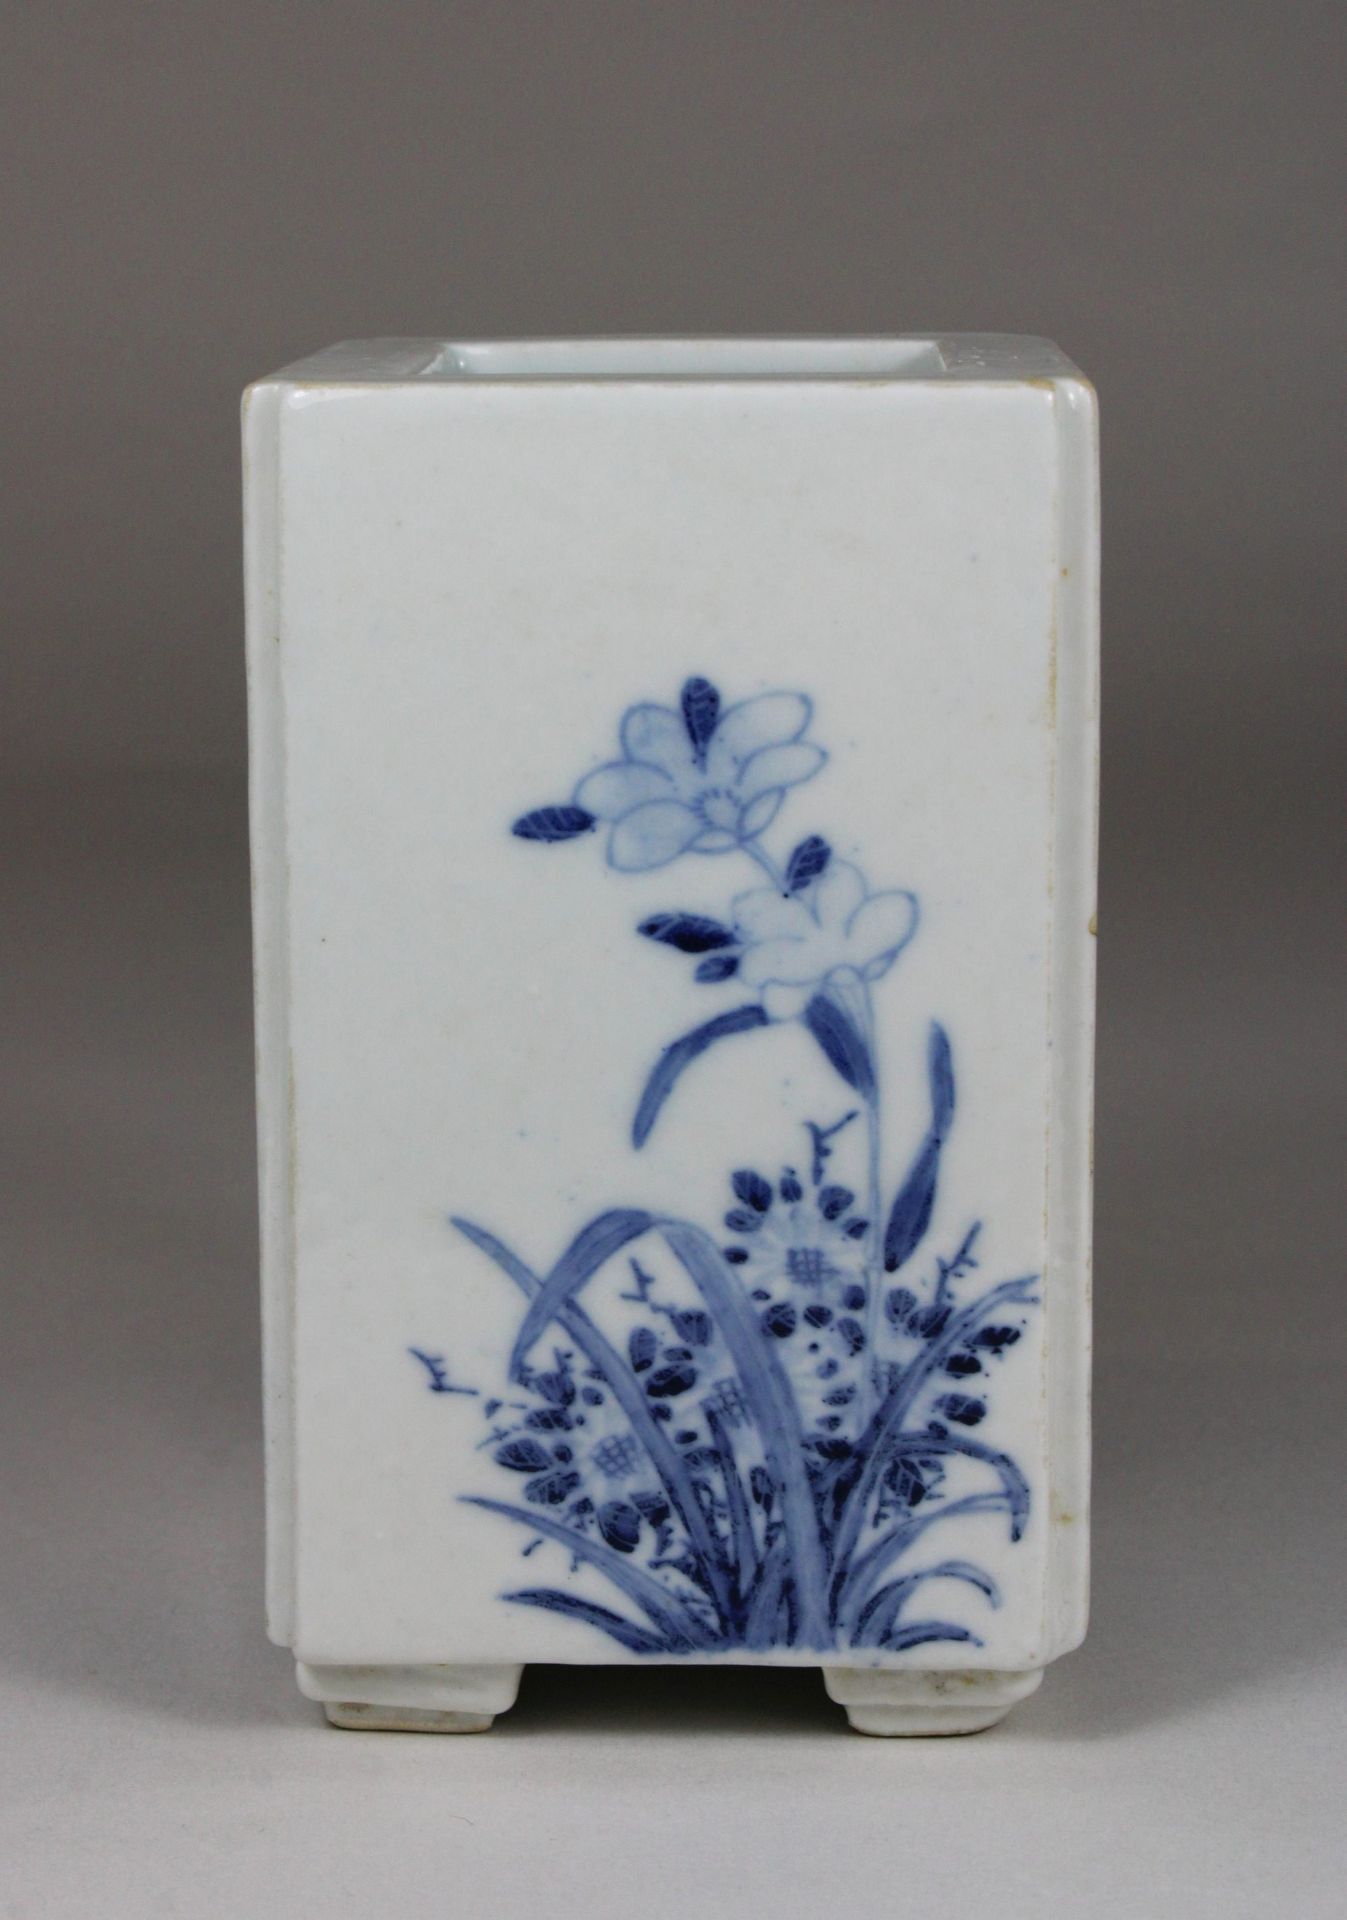 Chinesische quadratische Vase in Blau - Weiß, Figurative und florale Darstellung, H 12 cm, B 7 cm, - Image 3 of 5